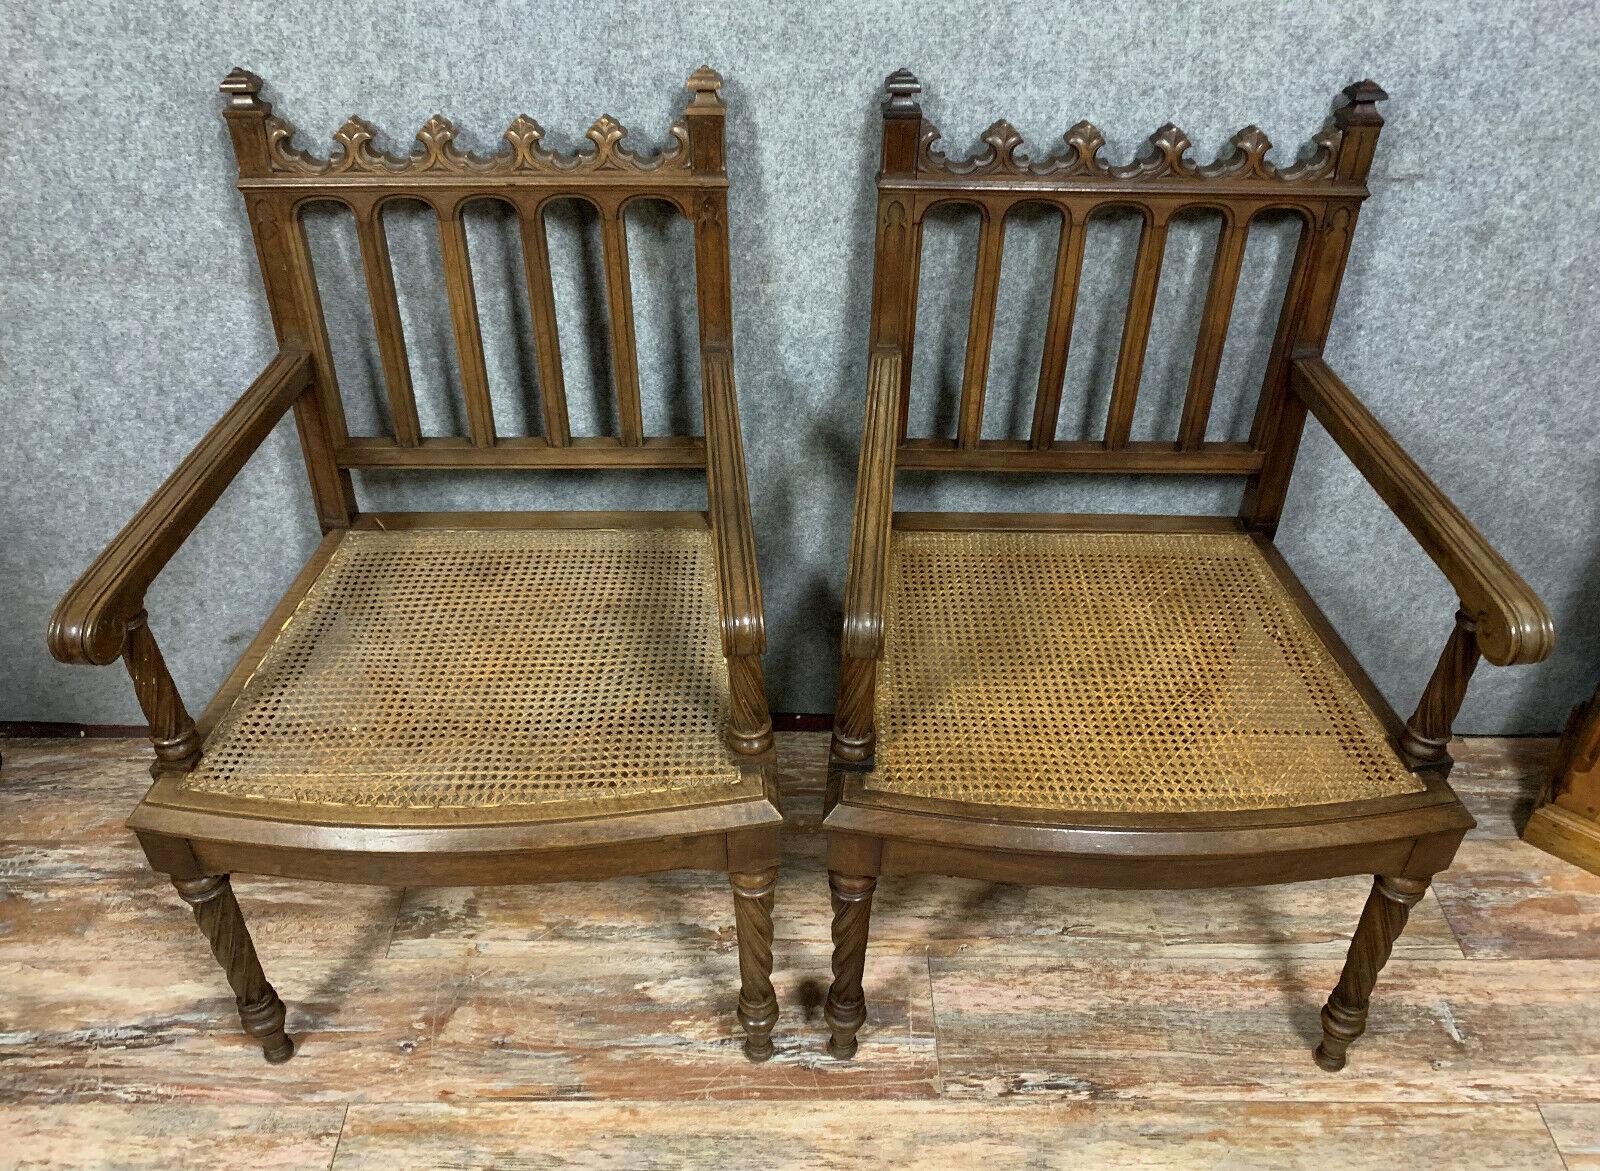 Cette paire de fauteuils gothiques en noyer, fabriqués vers 1850, rehausse votre décoration intérieure. Inspirés par les éléments architecturaux de la période médiévale, ces superbes fauteuils témoignent d'un savoir-faire intemporel et de détails